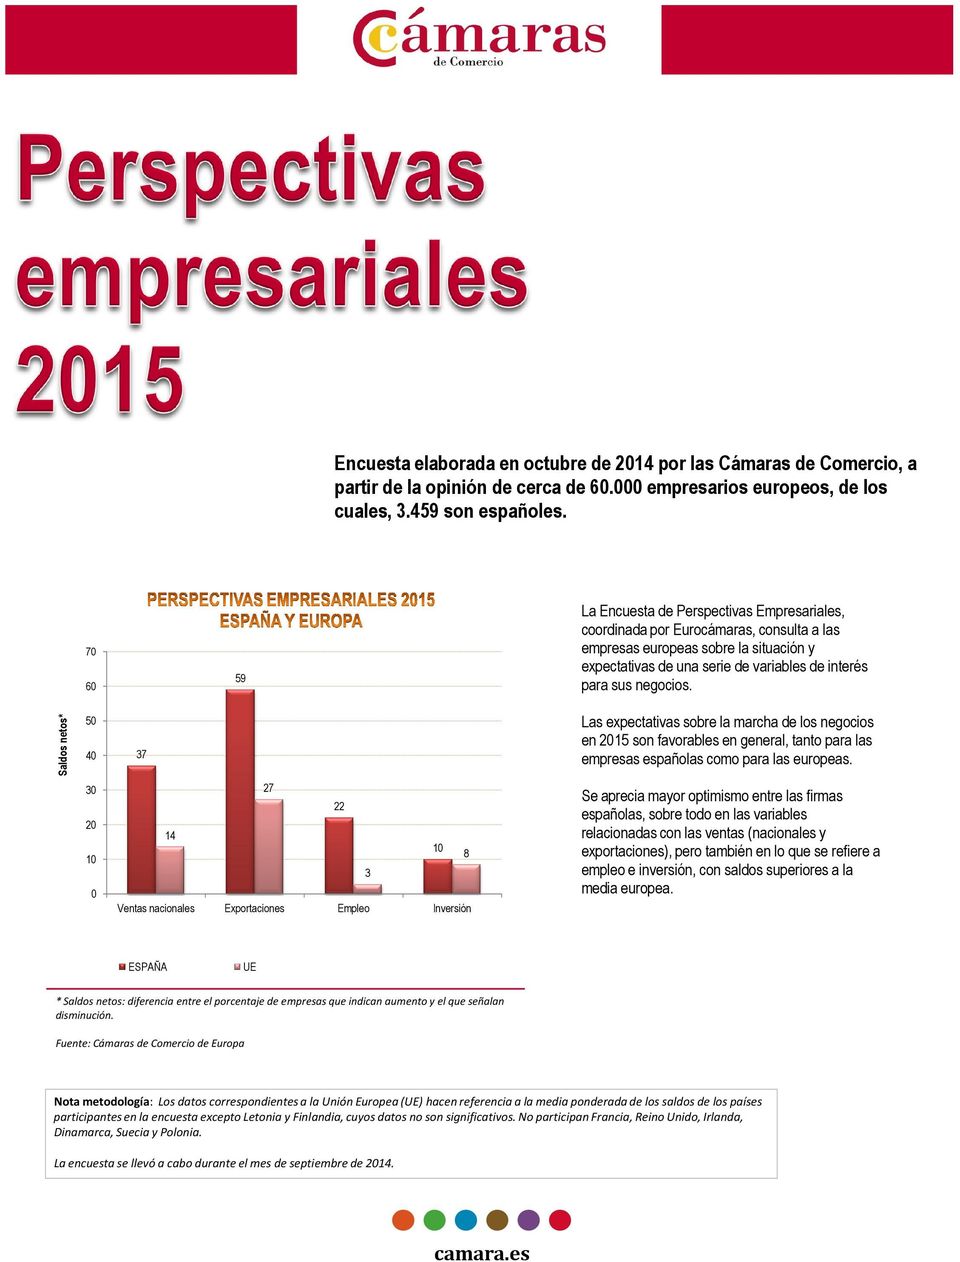 Saldos netos* 5 4 37 Las expectativas sobre la marcha de los negocios en 215 son favorables en general, tanto para las empresas españolas como para las europeas.